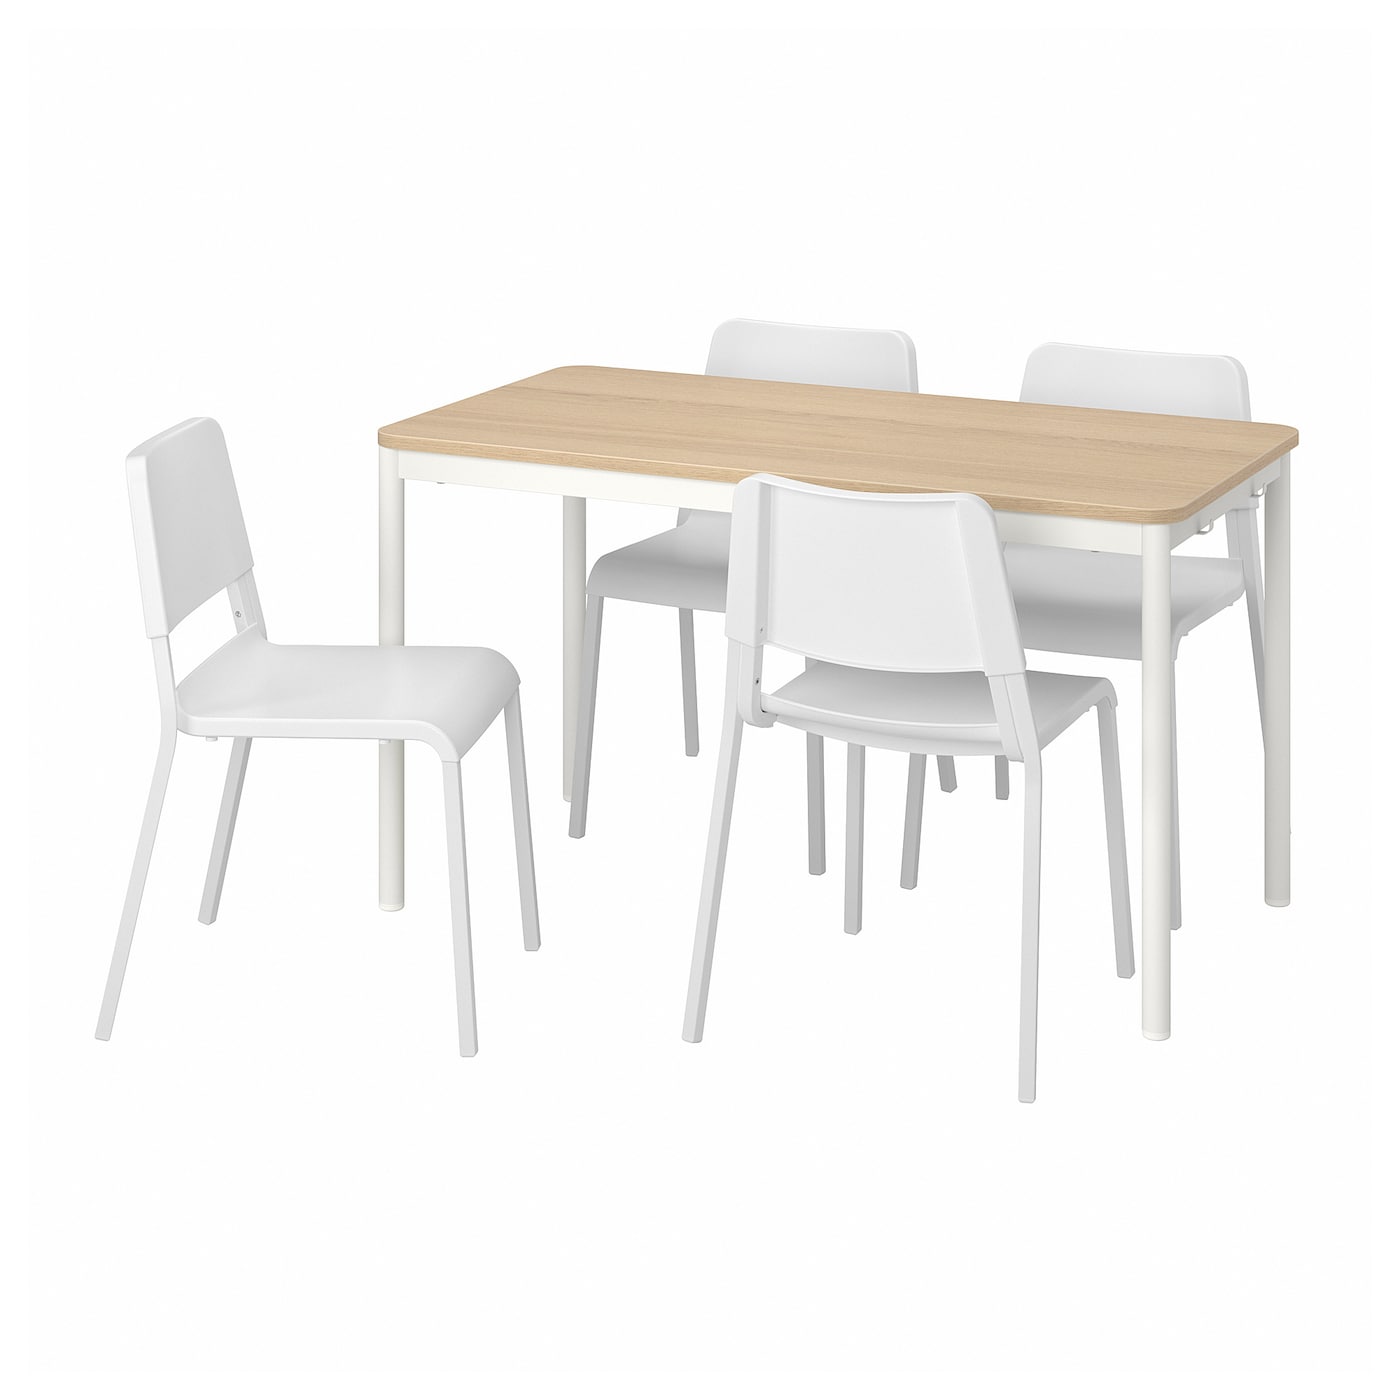 Стол и 4 стула - TOMMARYD / TEODORES IKEA/ ТОММАРИД/ТЕОДОРЕС ИКЕА, 130х70х75 см, белый